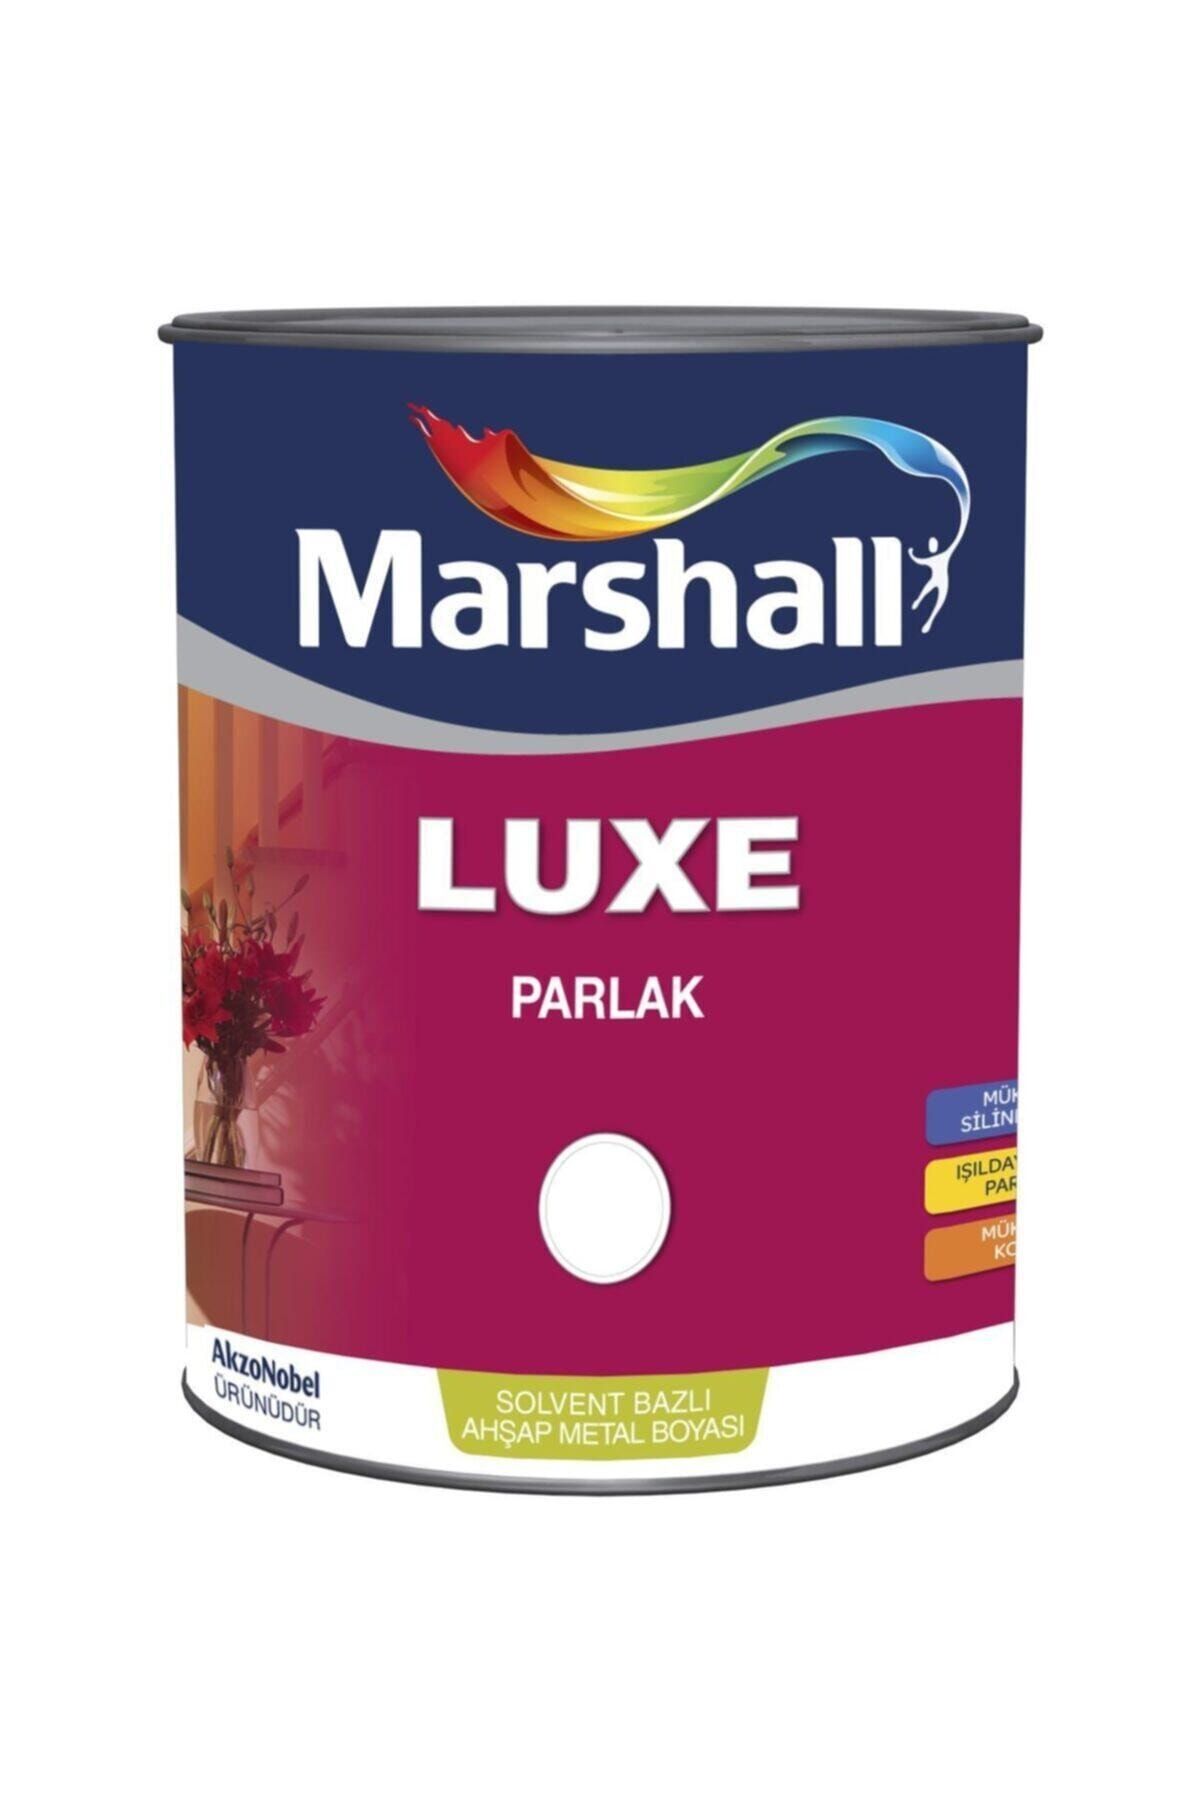 Marshall Luxe Parlak Solvent Bazlı Yağlı Boya 1 Lt ahşap demir plastik Yüzeyler Için Kirli Beyaz